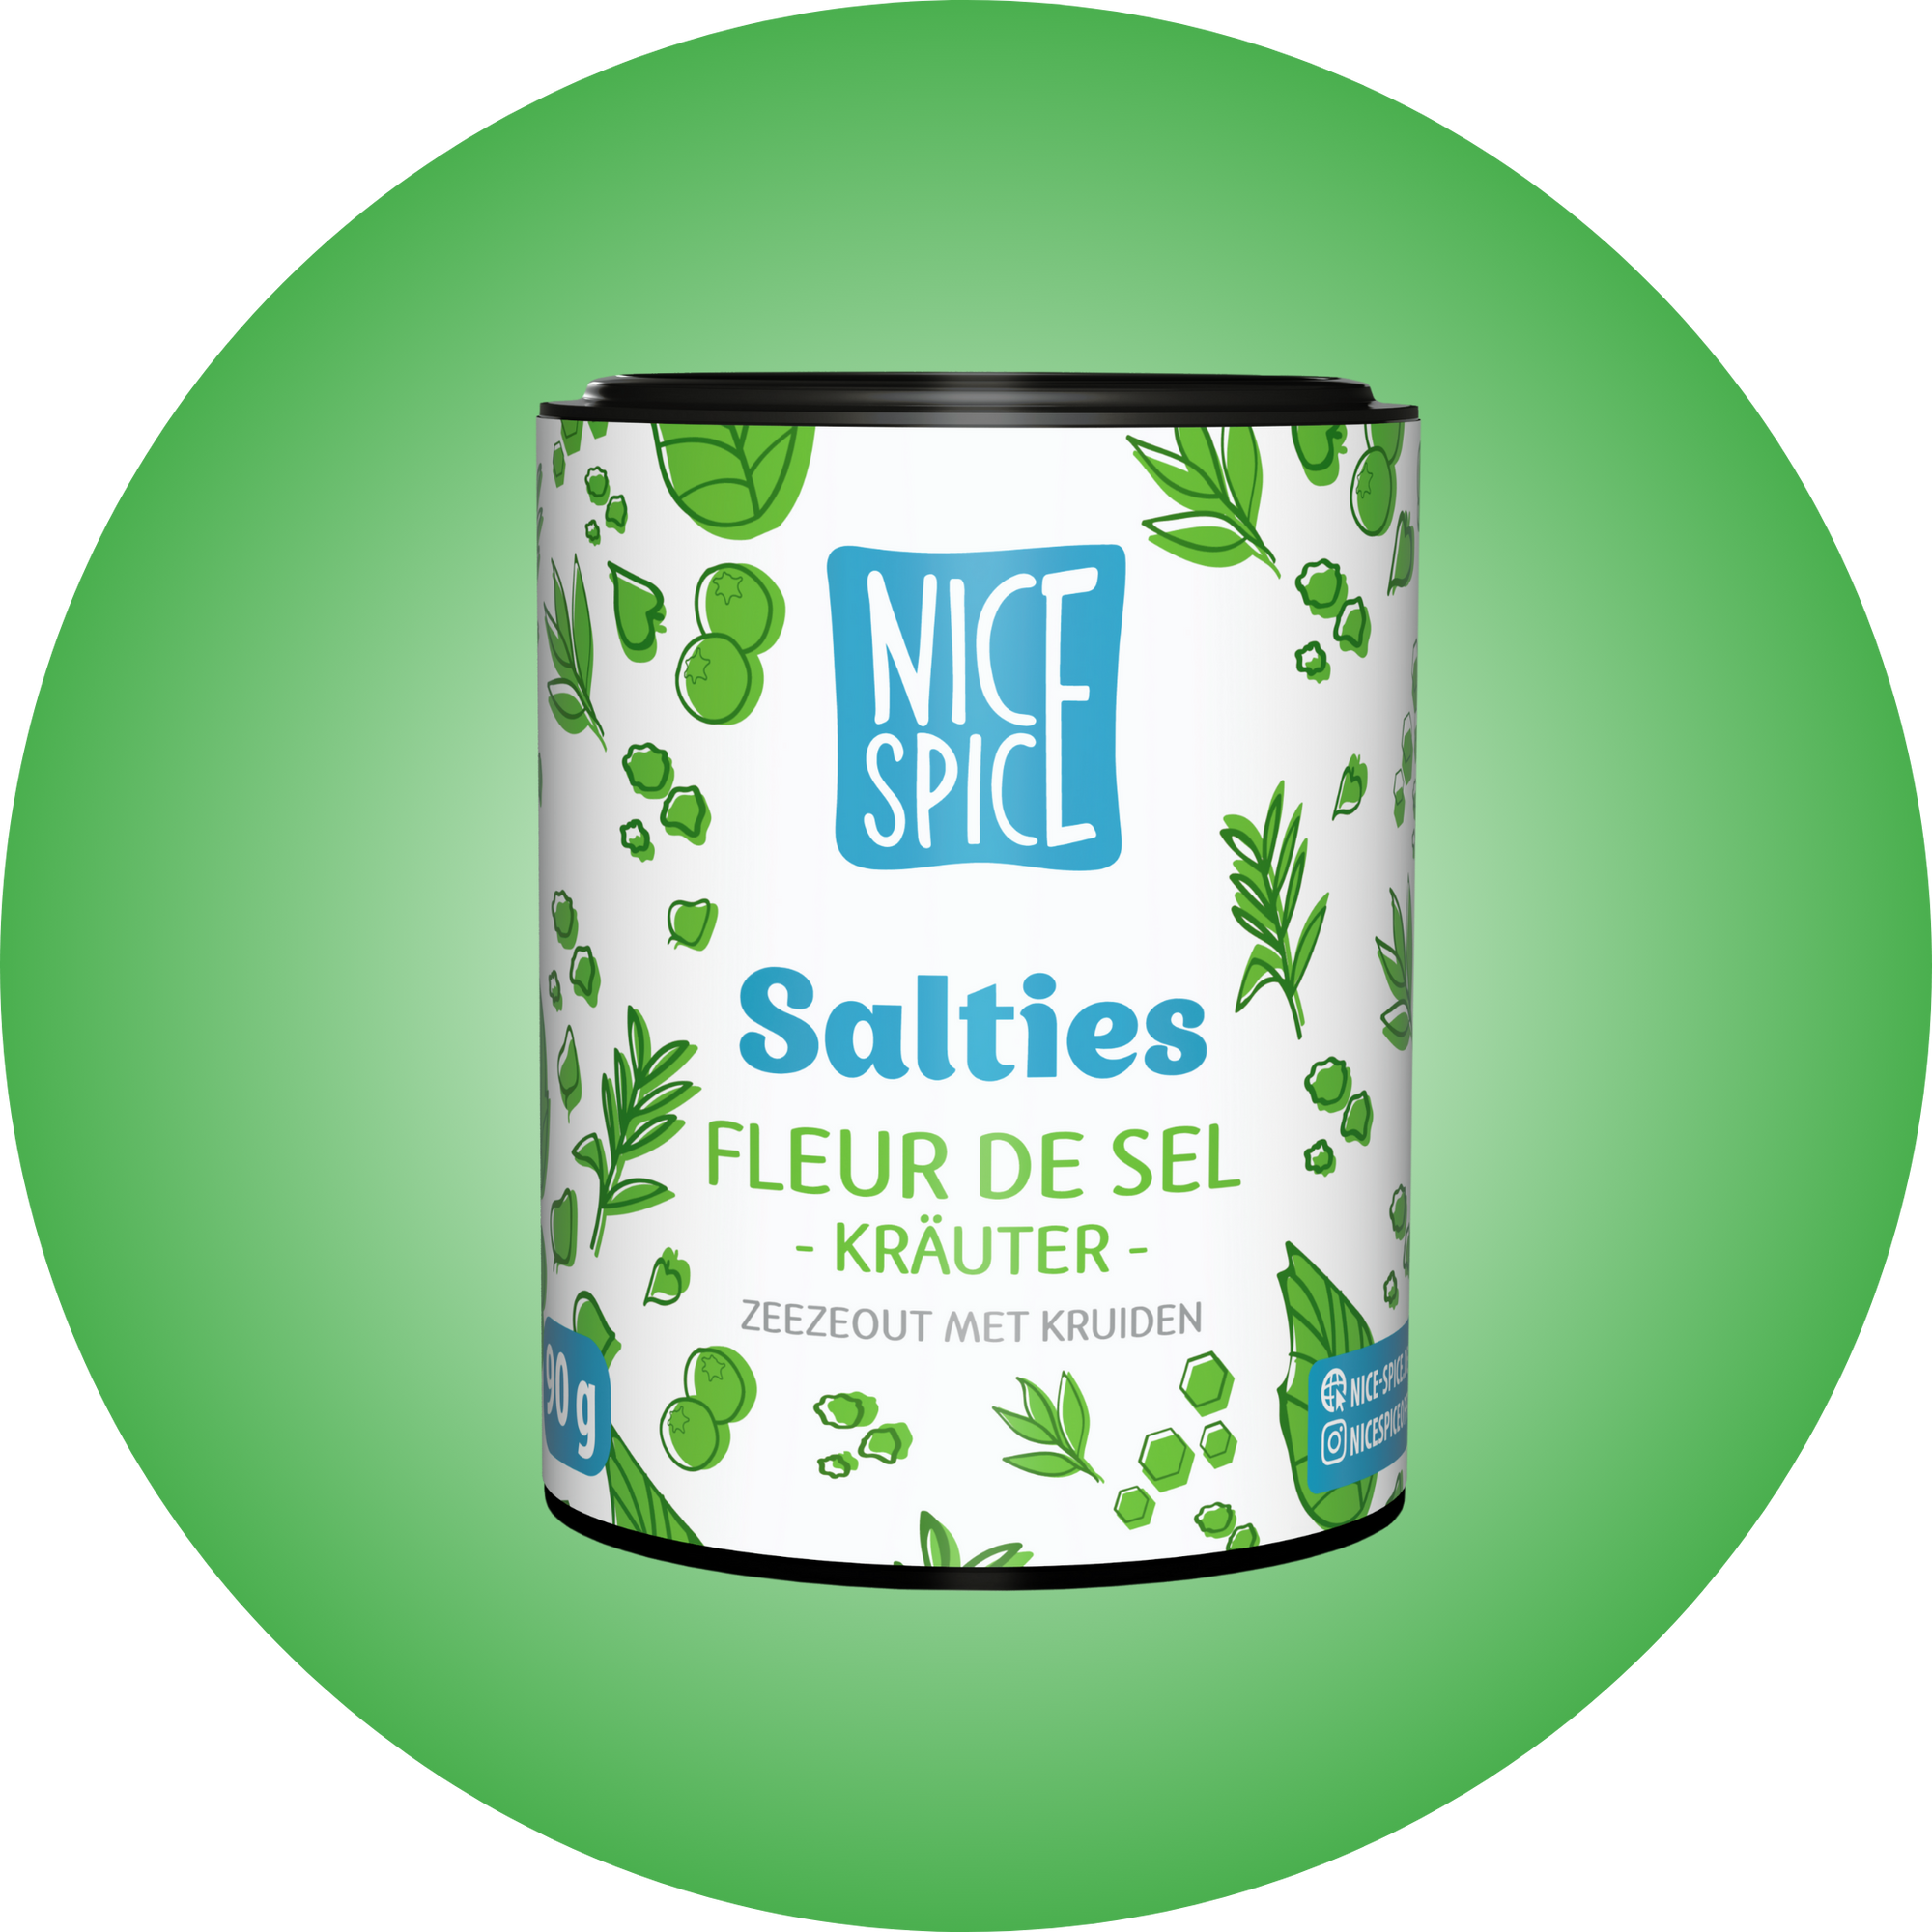 NICE SPICE Salties Fleur de Sel Kräuter in weissgrüner zylinderförmiger Dose vor hellgrünem Hintergrund